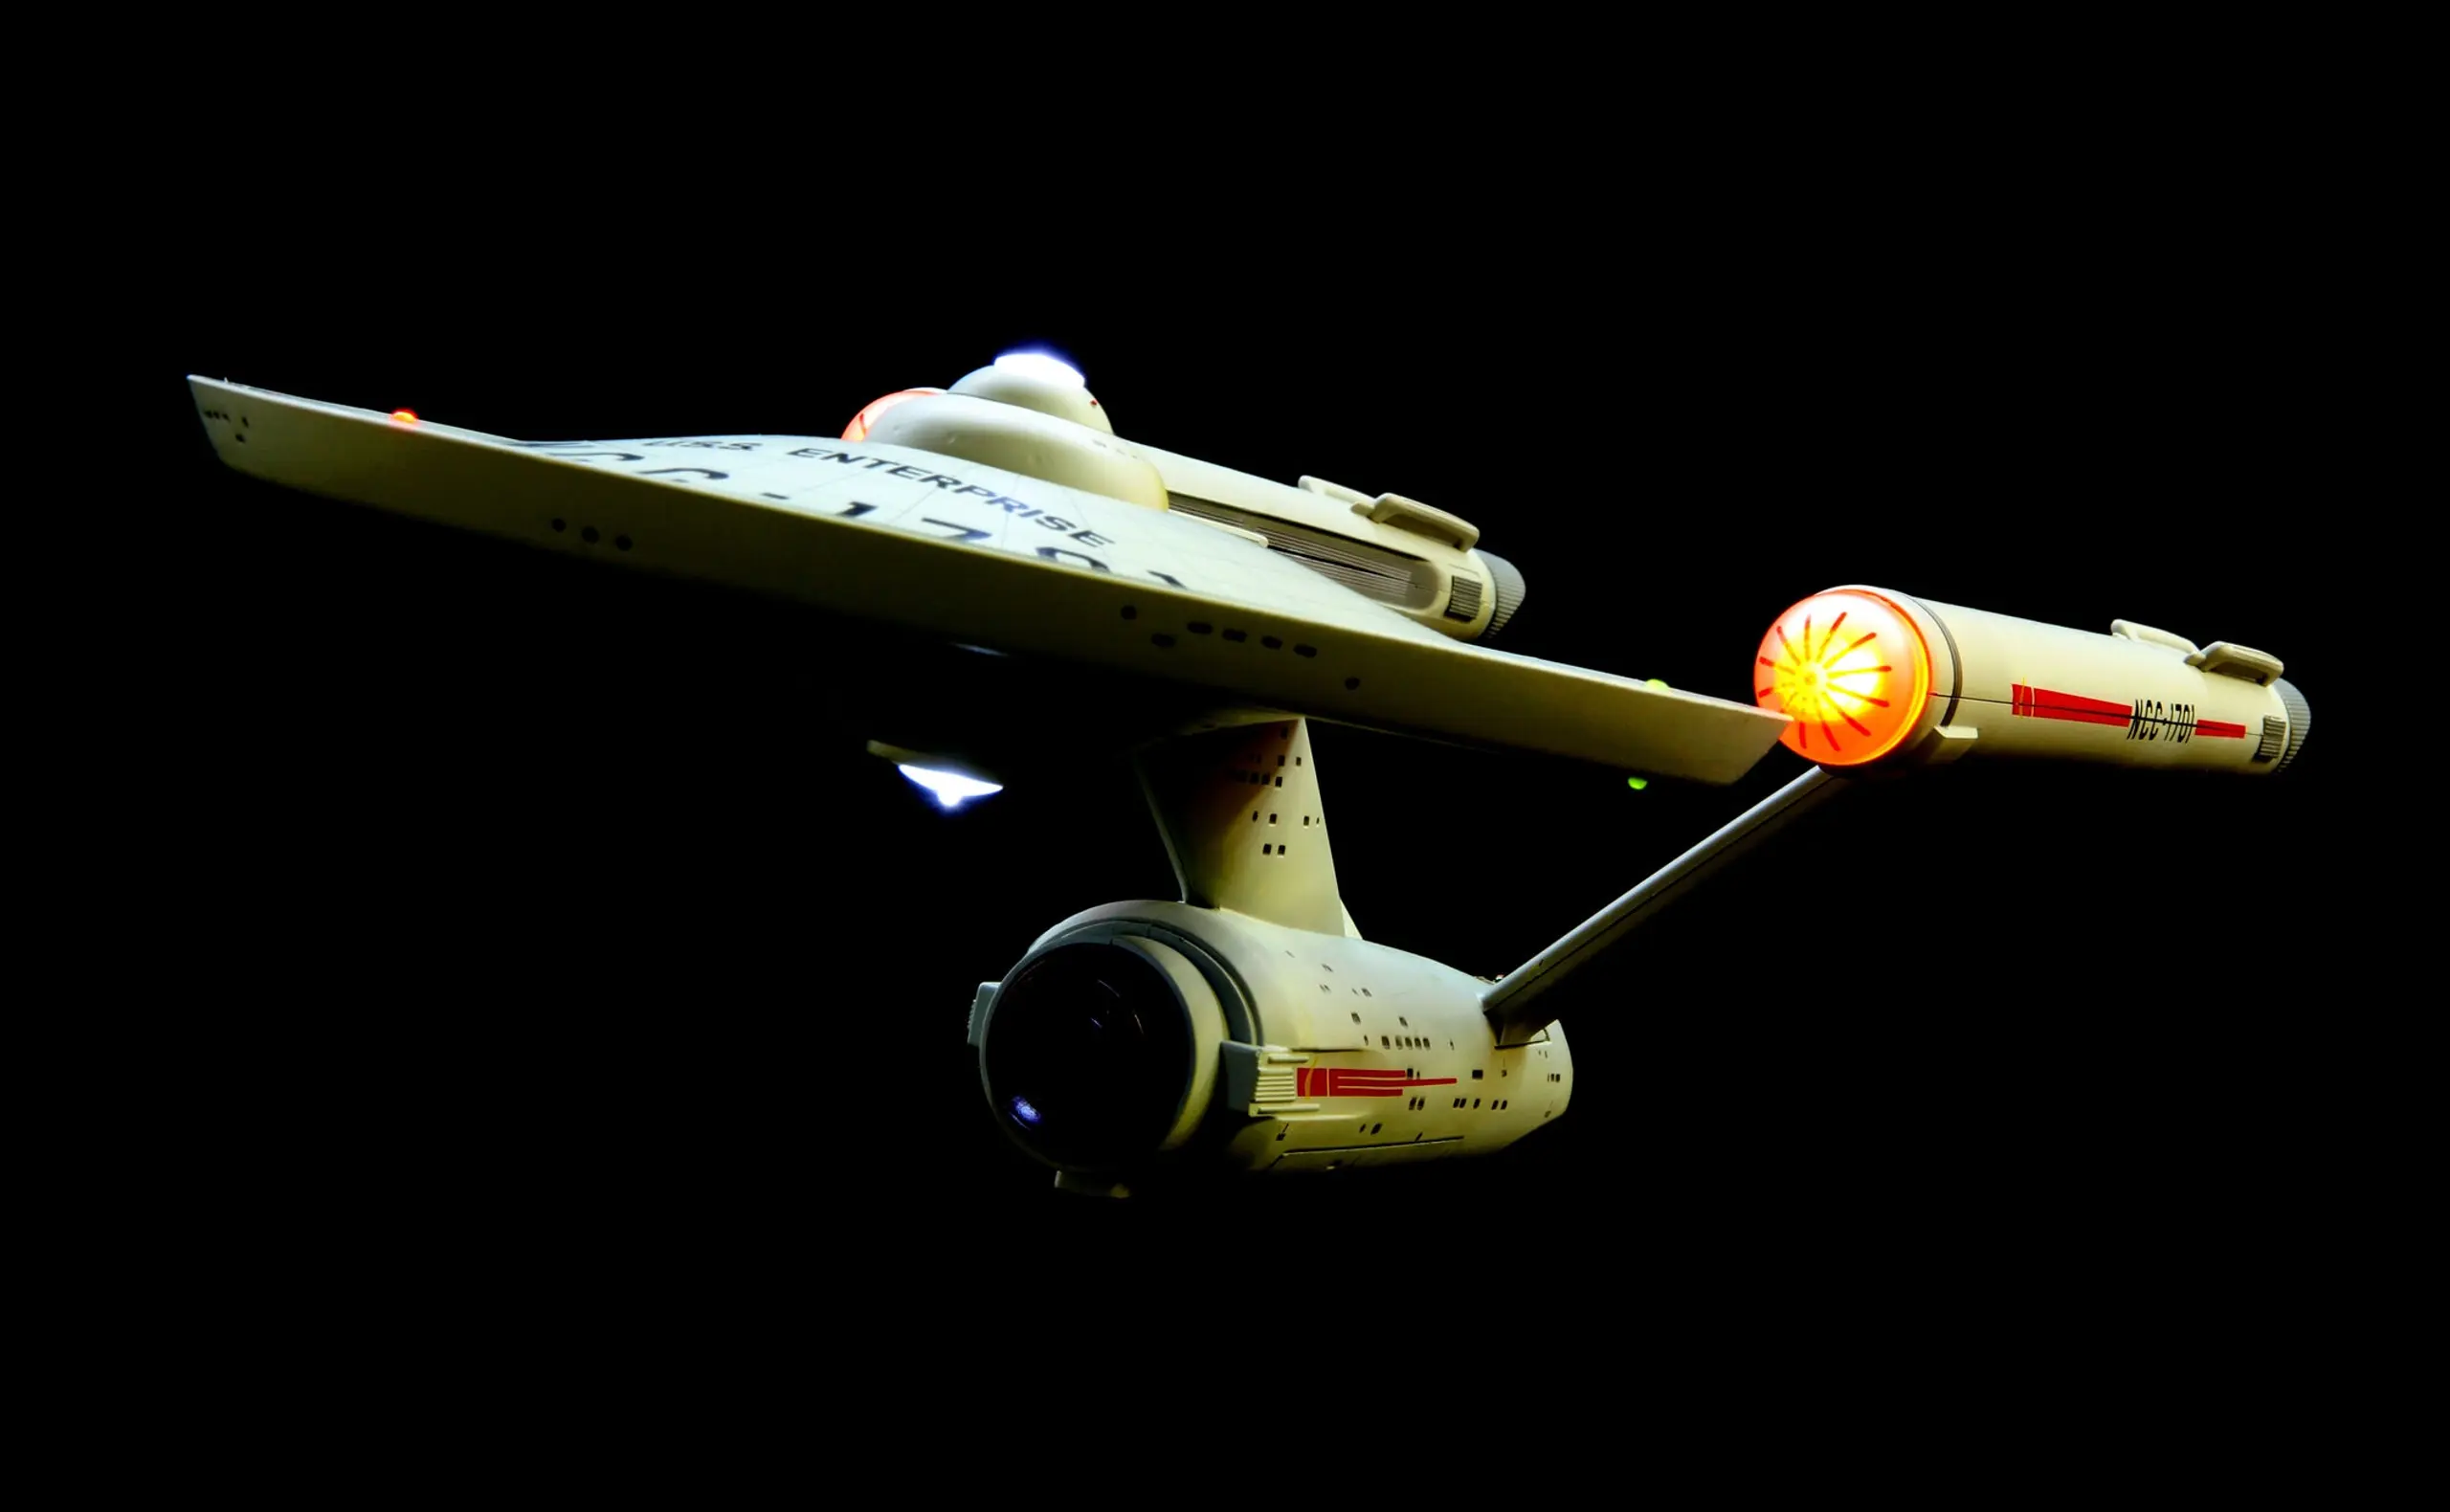 Die USS Enterprise NCC-1701, das Raumschiff Enterprise, aus Star Trek.